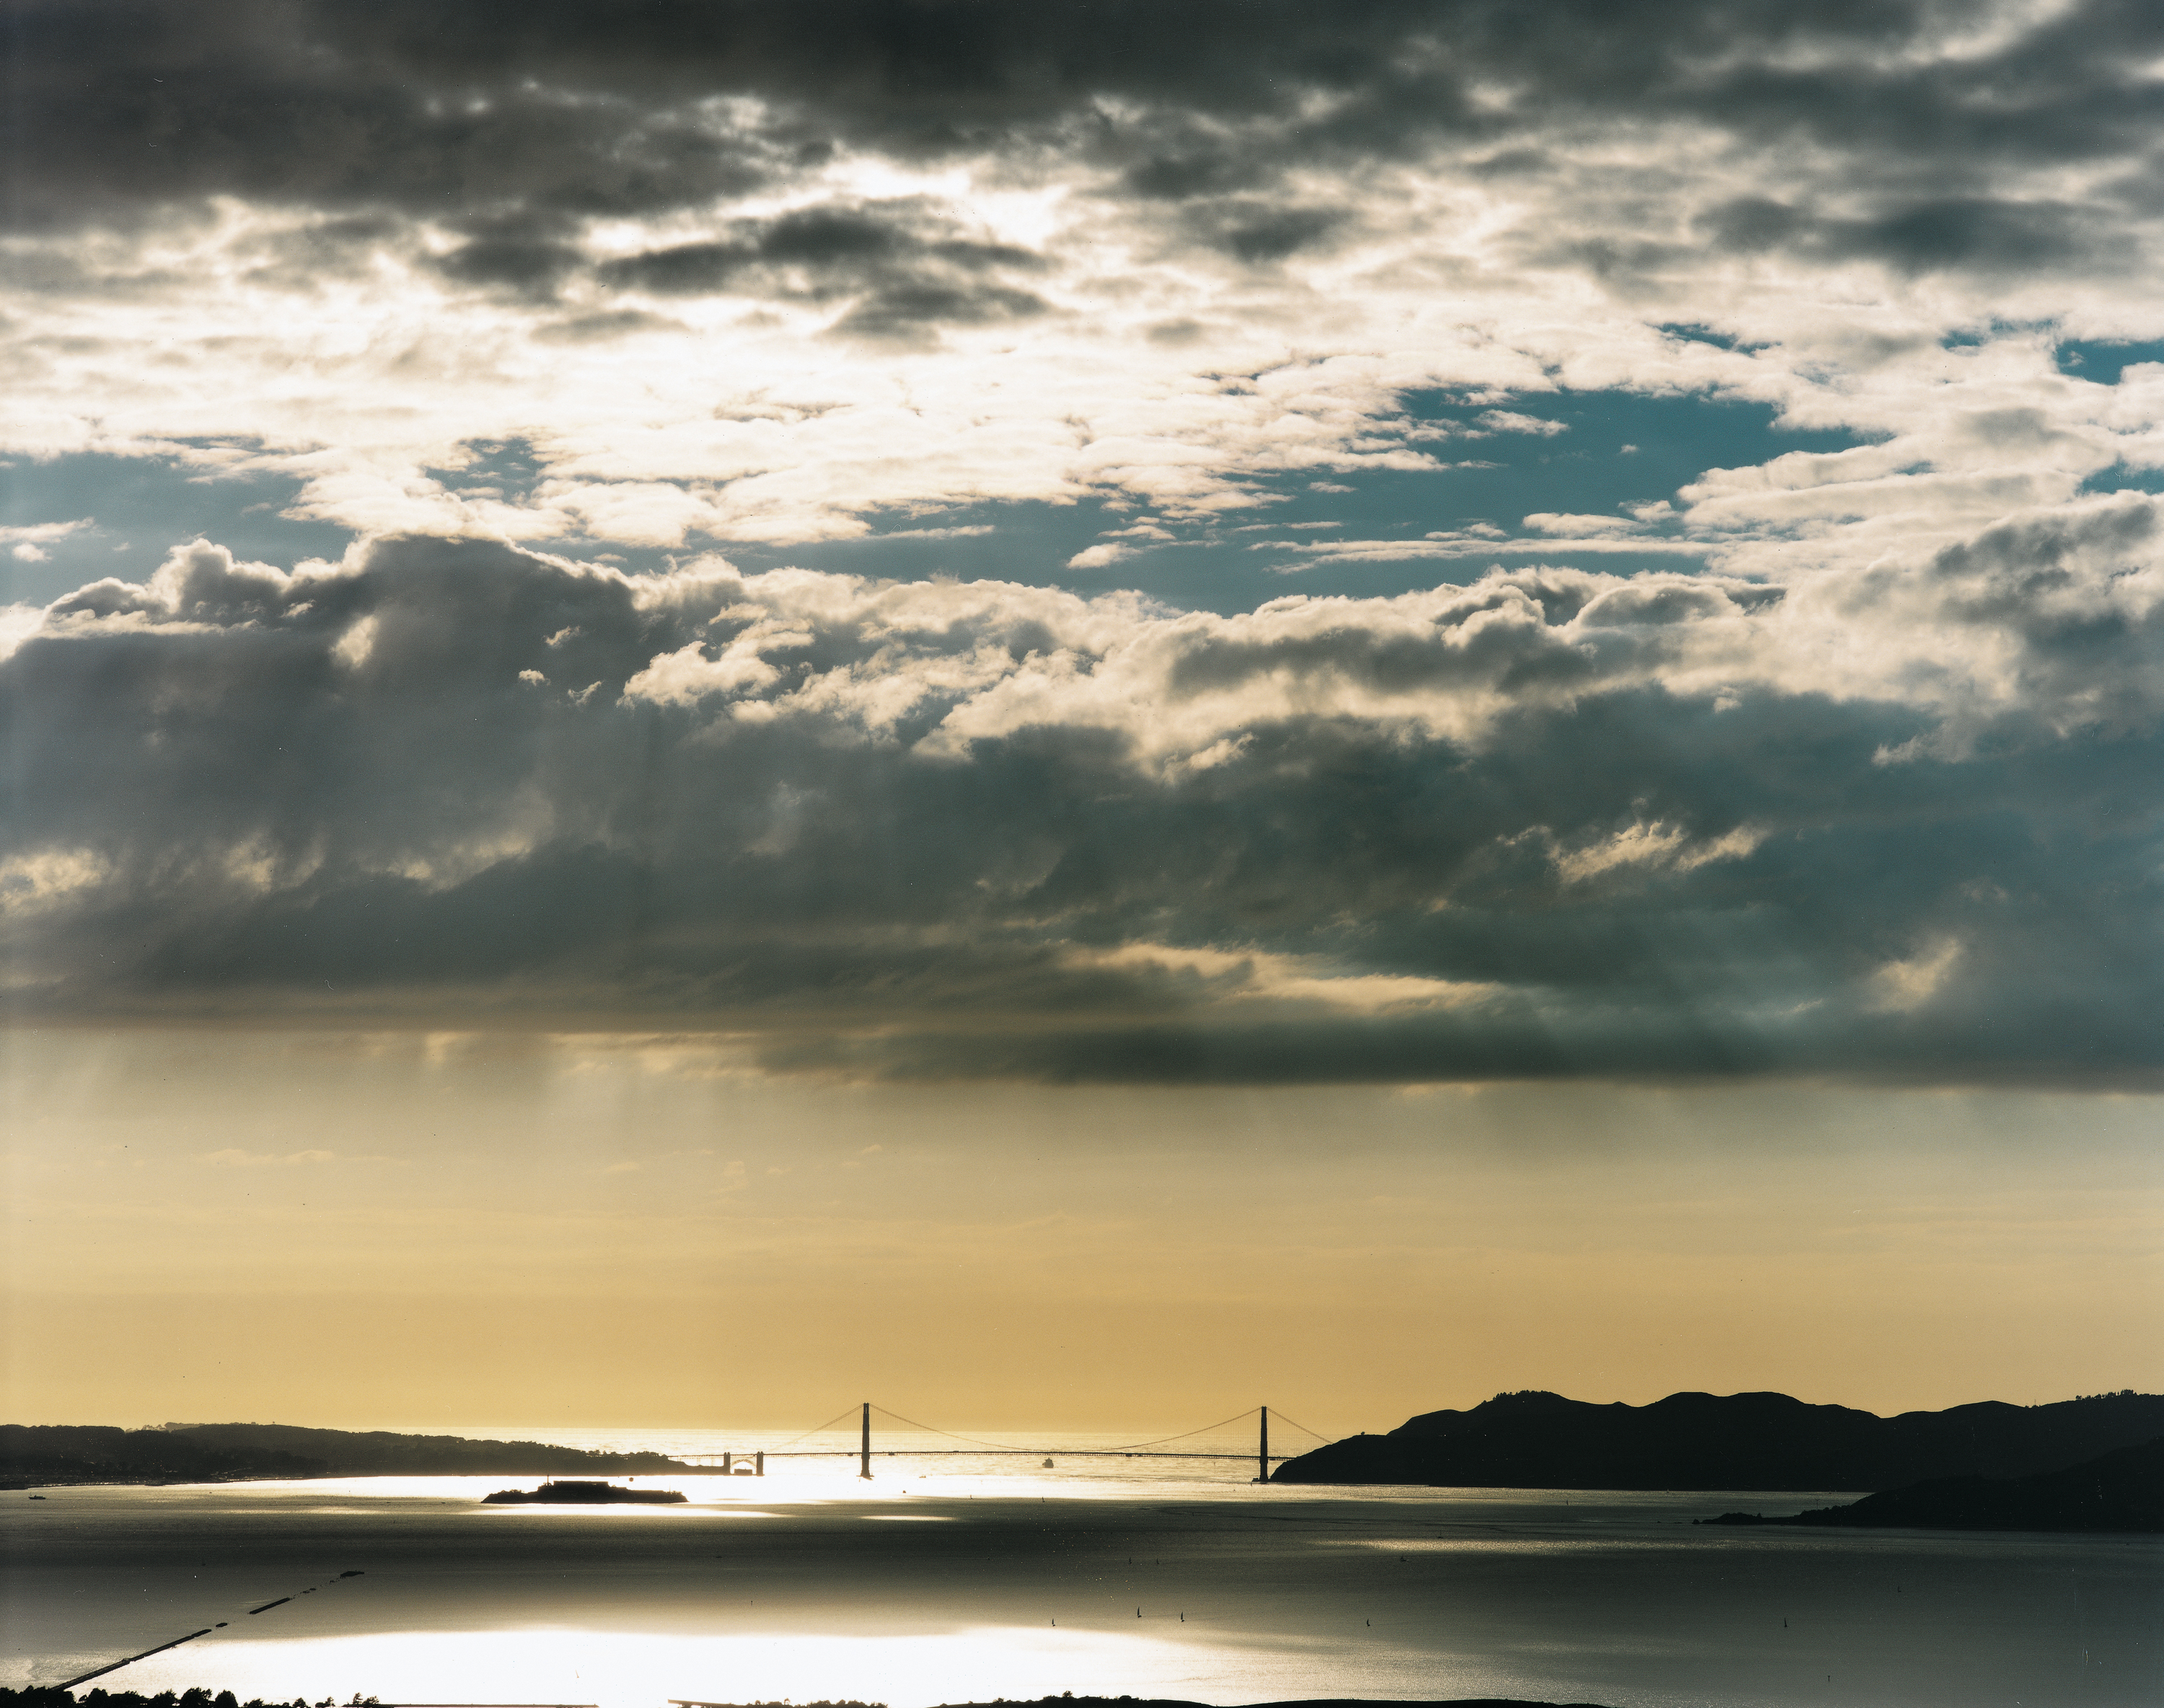 Color photograph of San Francisco Bay and Golden Gate Bridge with sun flooding through a cloudy sky